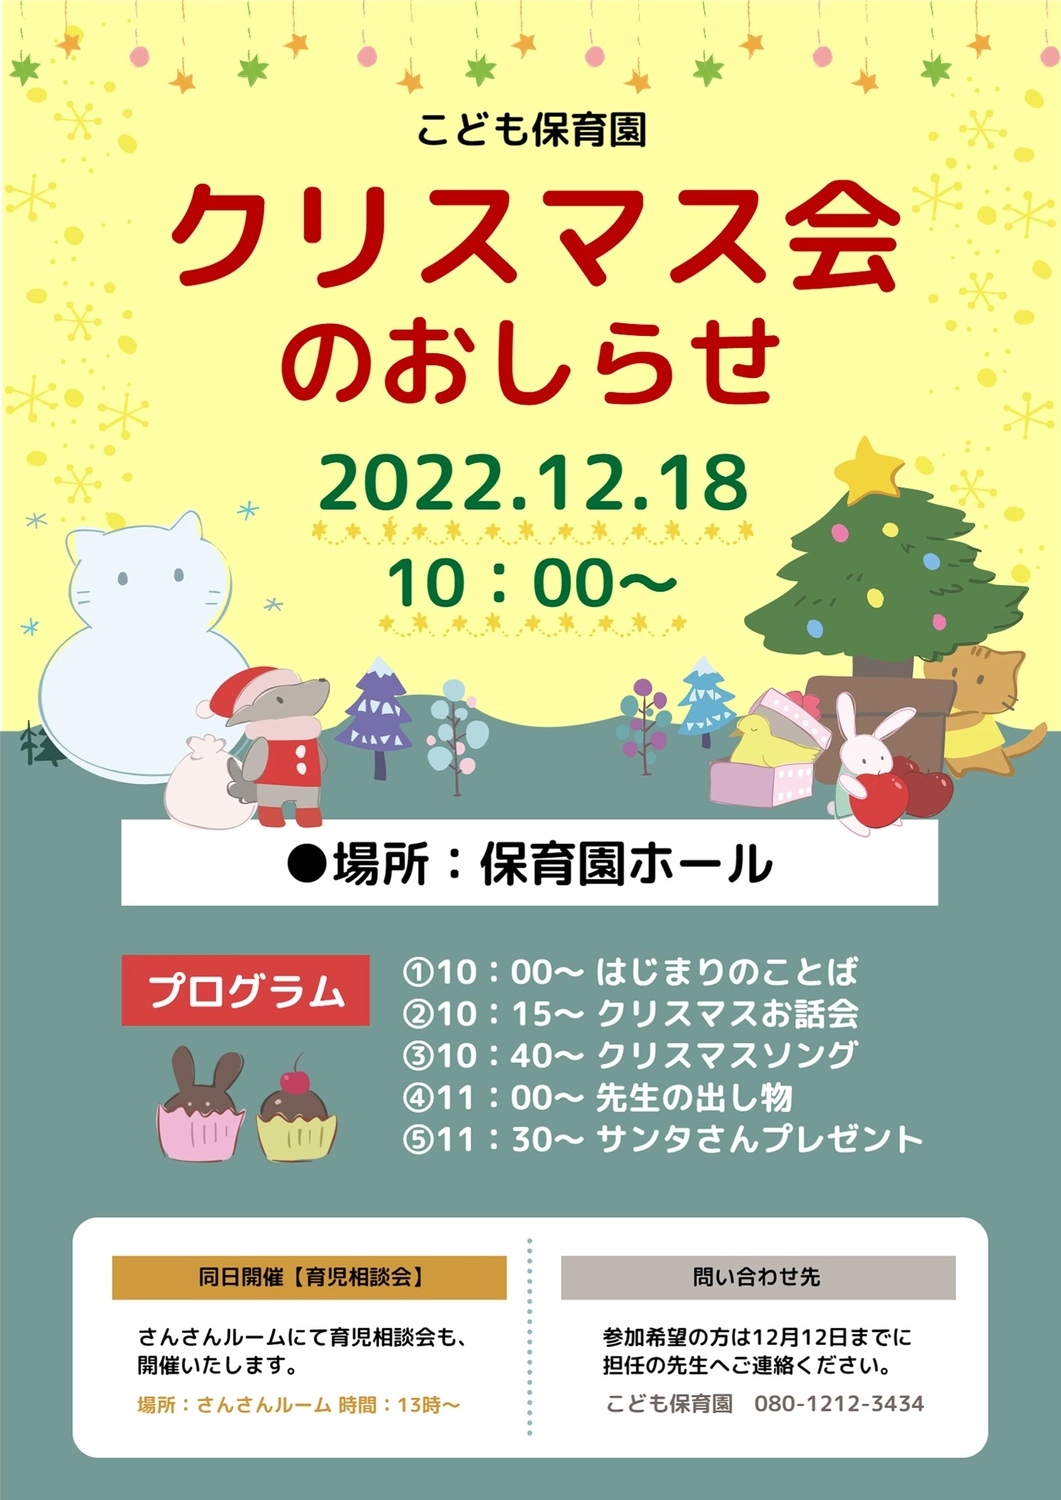 保育園のクリスマス会のお知らせ, nursery school, pretty, December, News template